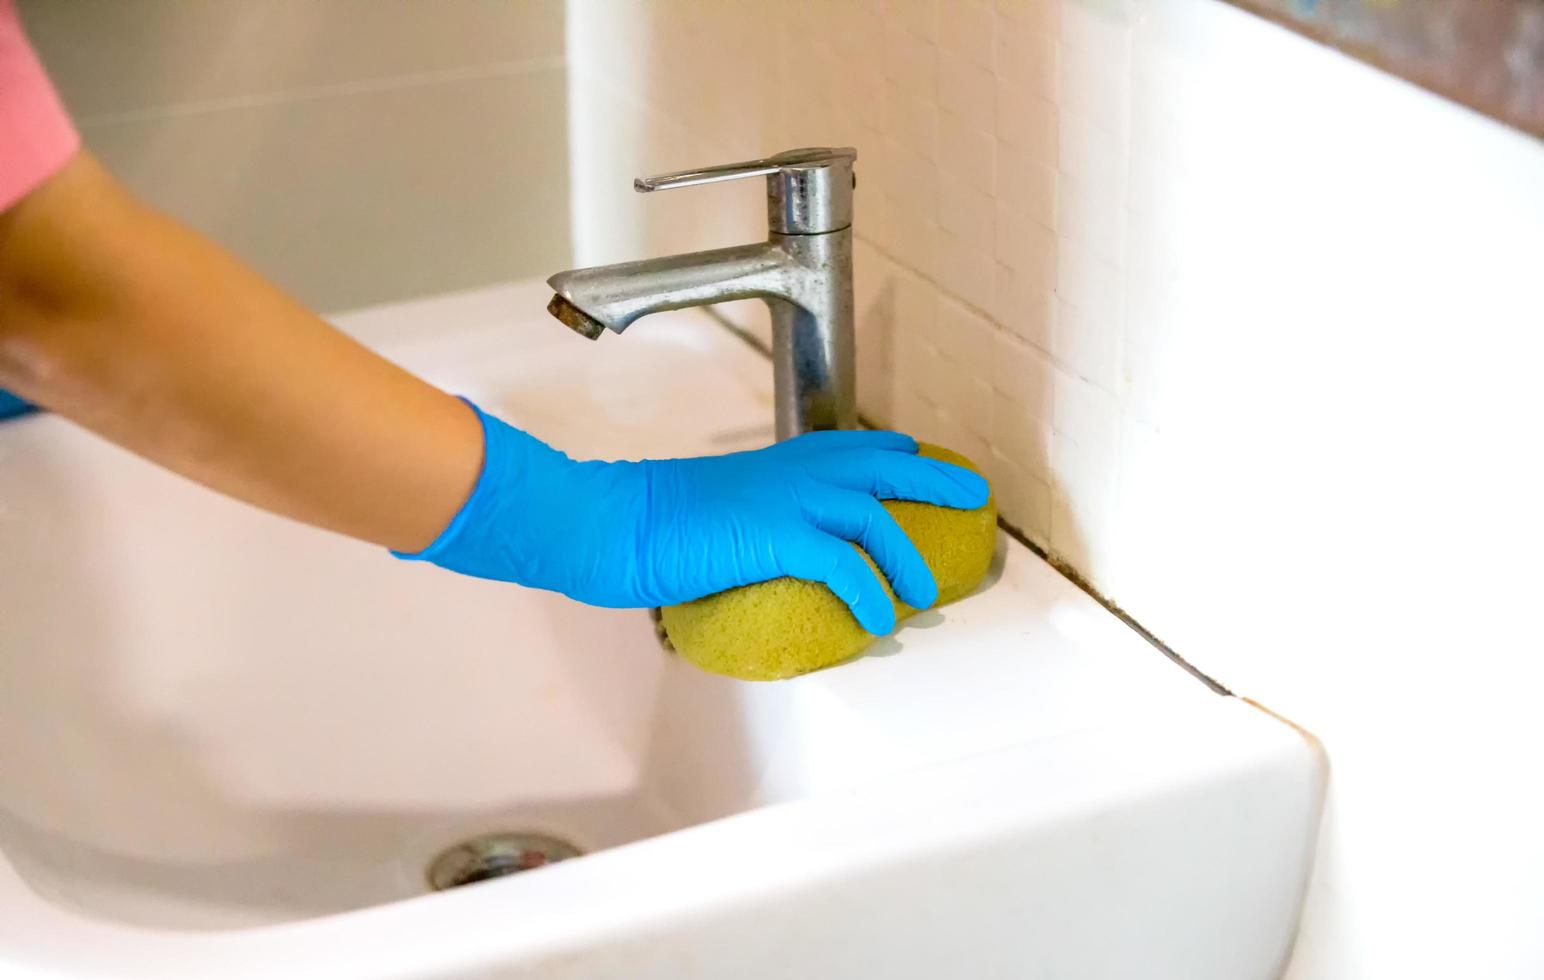 persona, una mano en un guante de goma azul en la foto, quita y lava el lavabo del baño foto